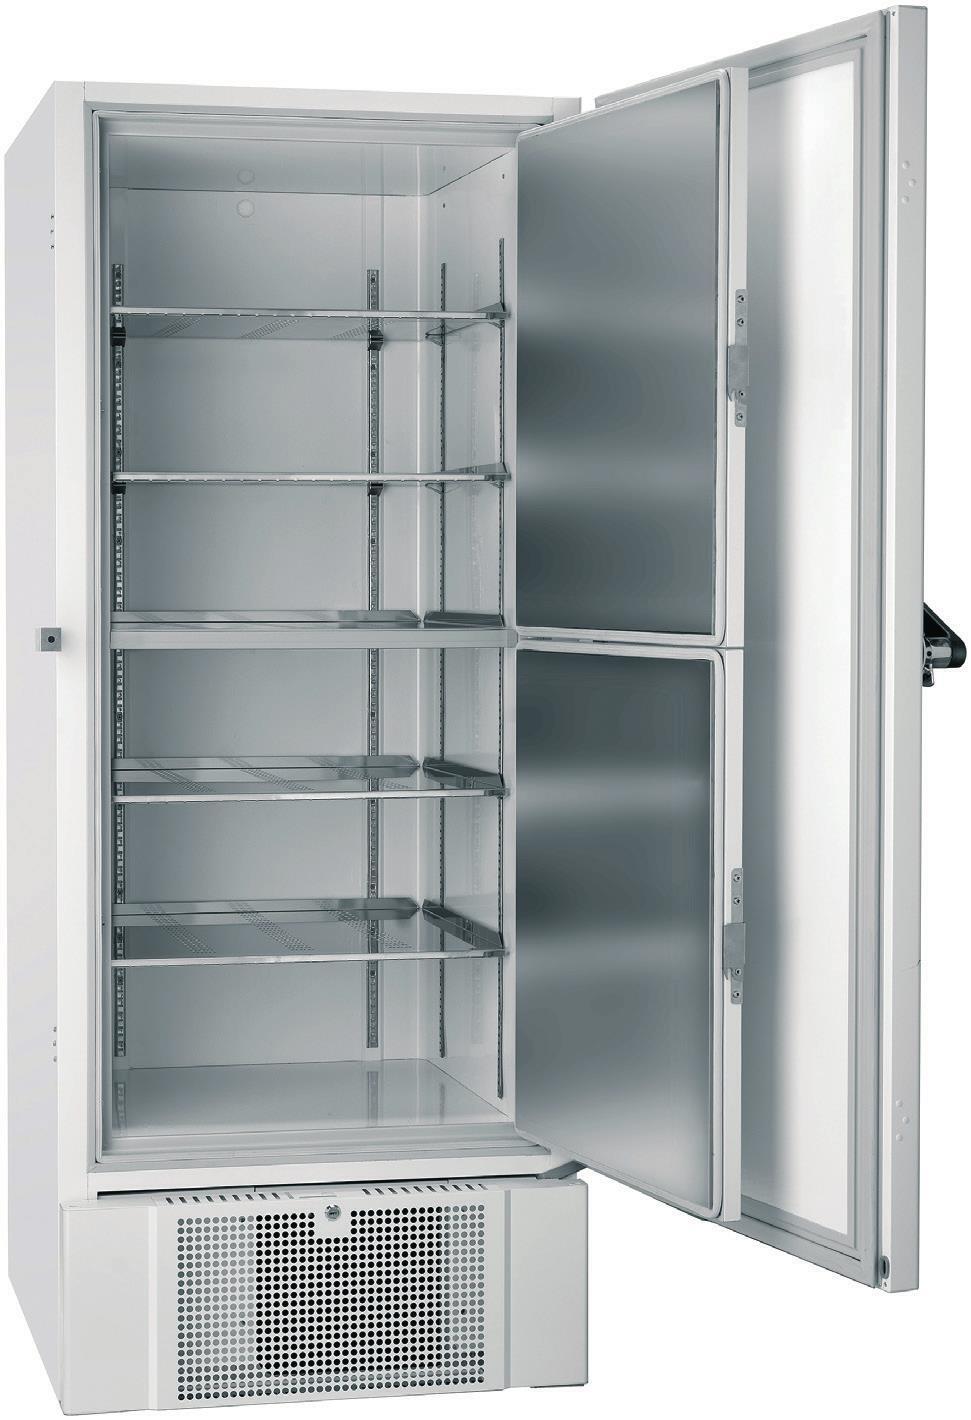 丹麦GRAM超低温冰箱BioUltra UL570